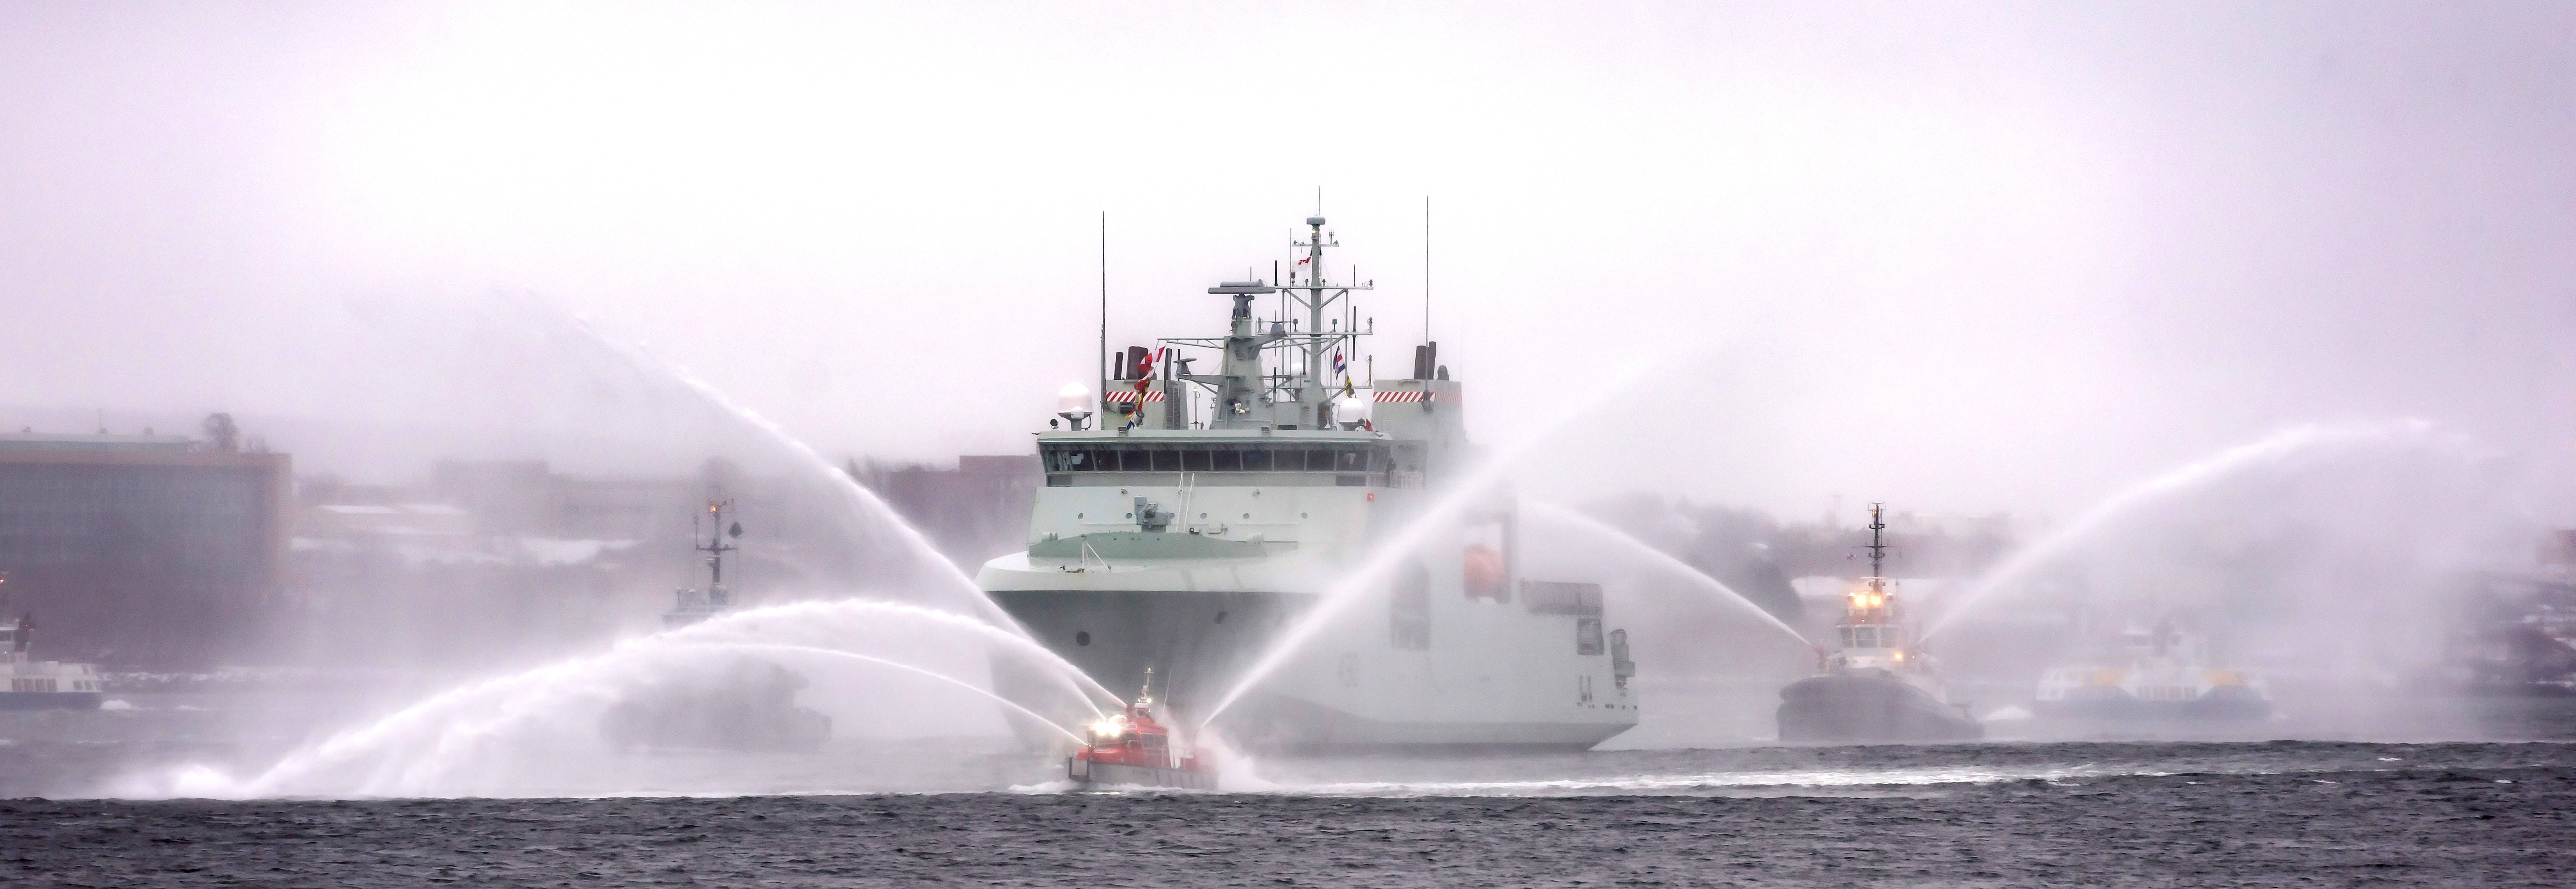 Le NCSM Harry DeWolf entre dans le port de Halifax le 16 décembre